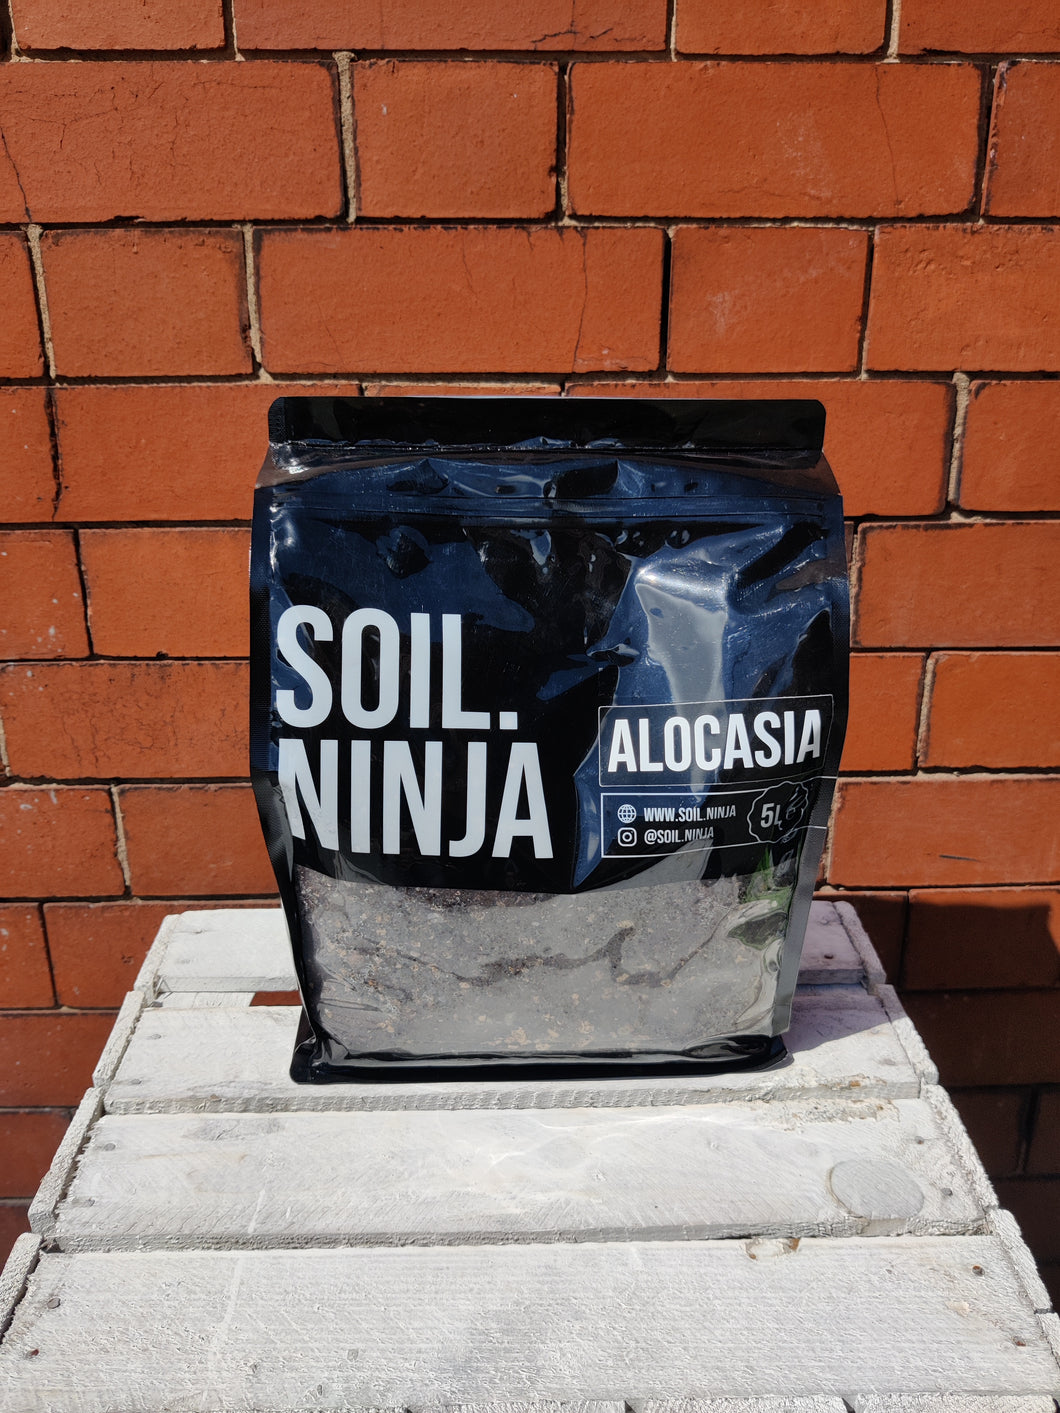 Alocasia 5L Soil. Ninja